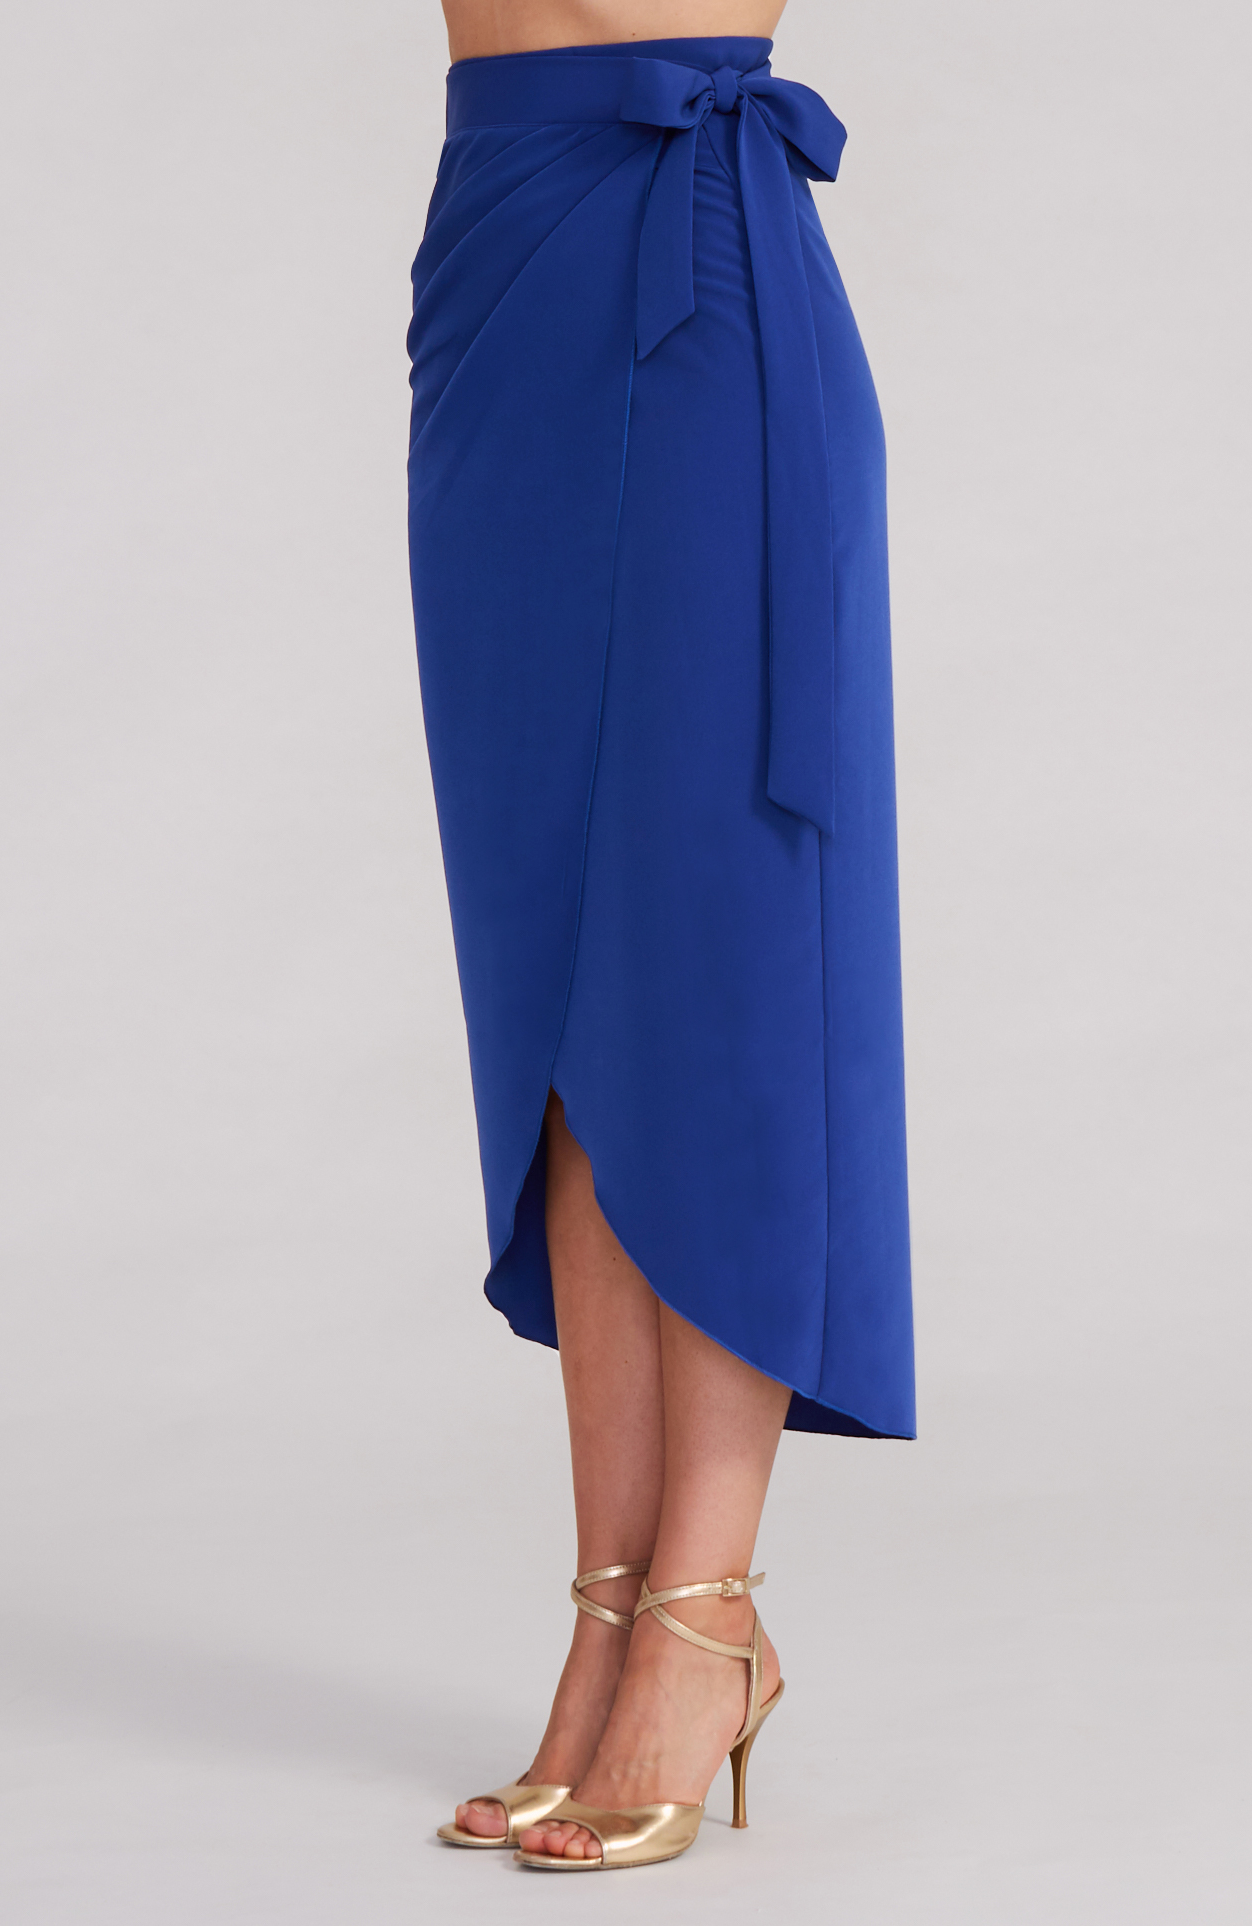 JULIET - Royal Blue Wrap Skirt